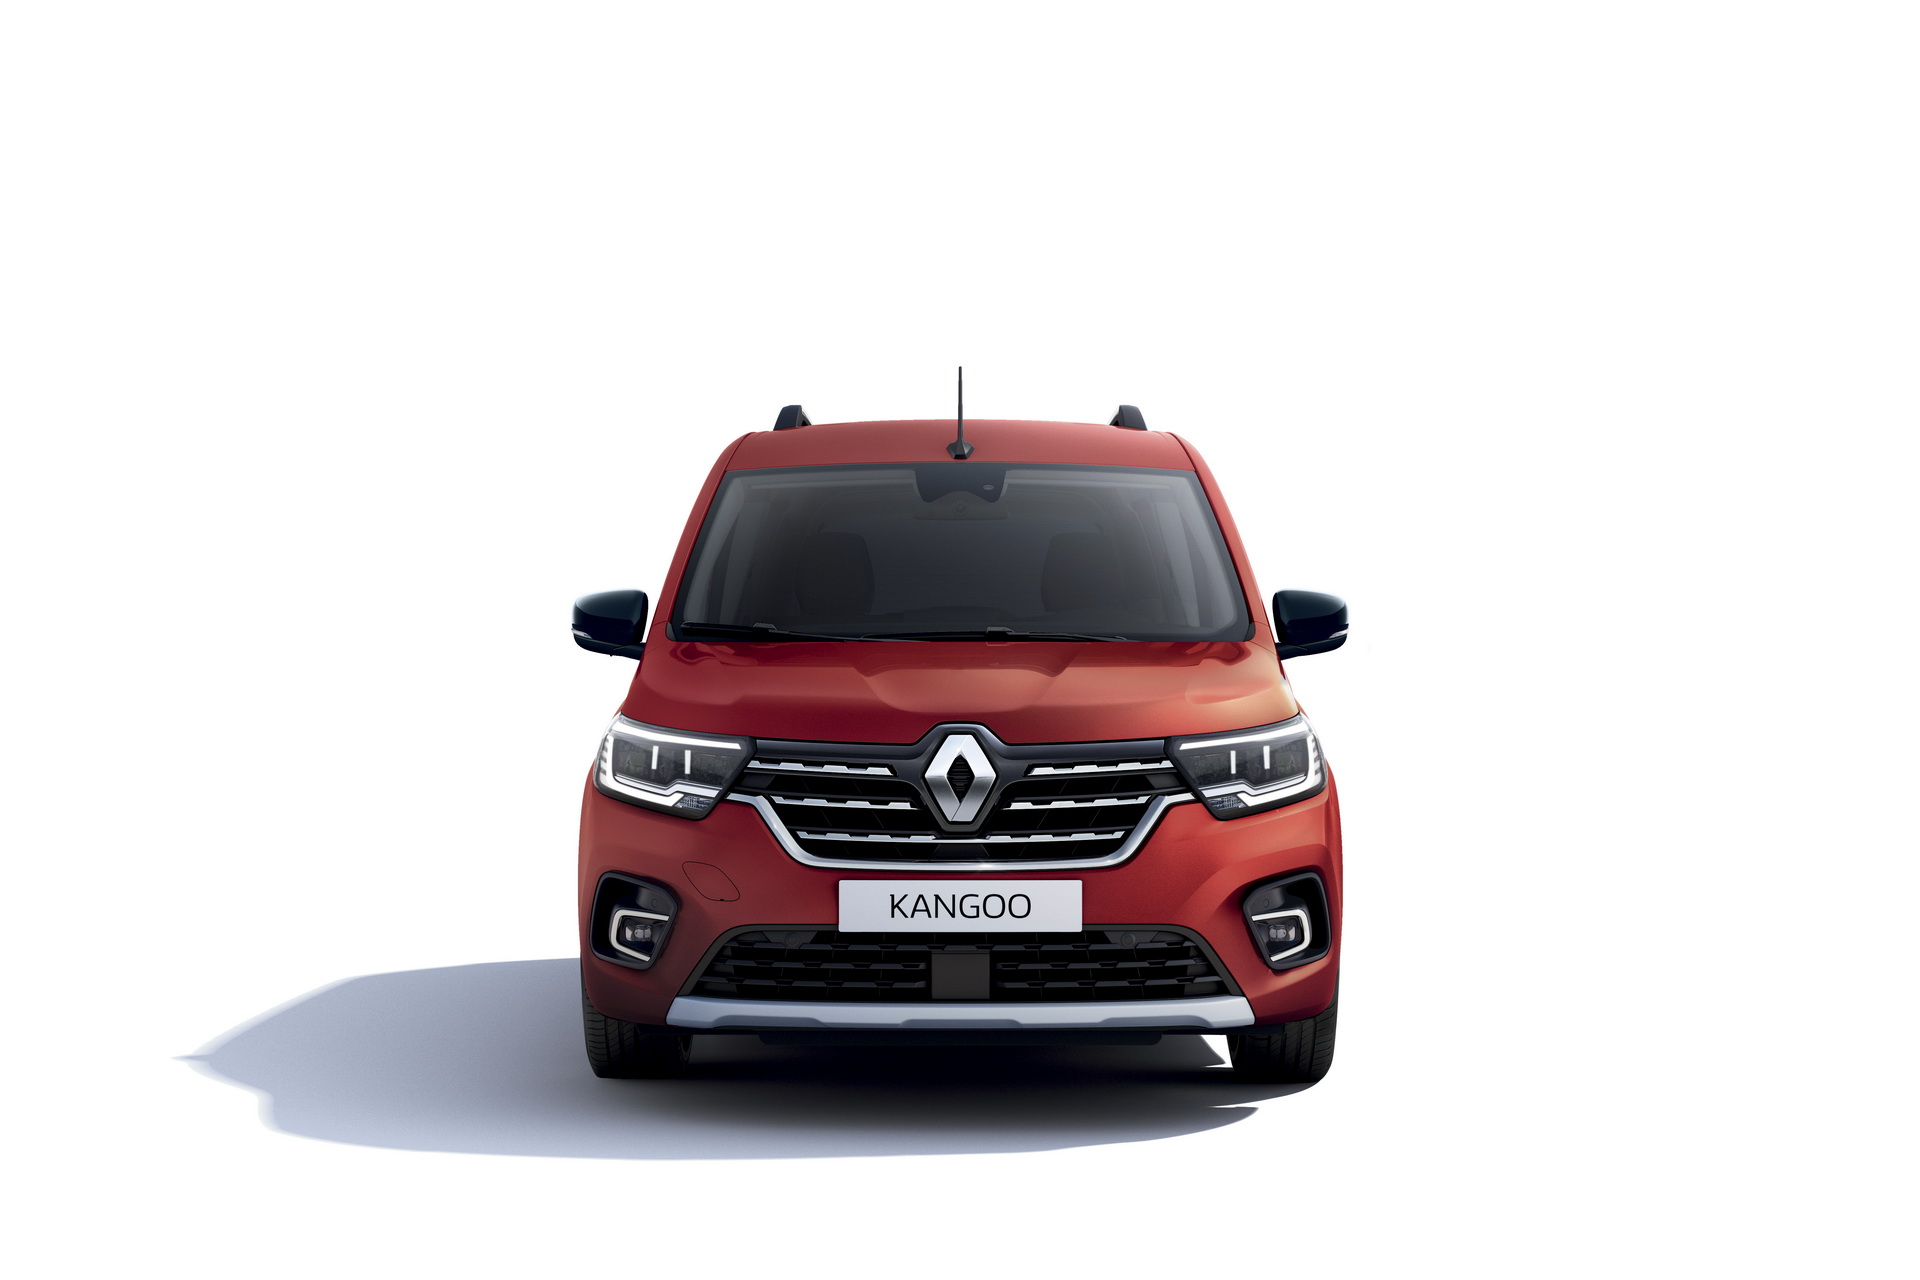 Yeni Renault Kangoo resim galerisi (01.04.2021)